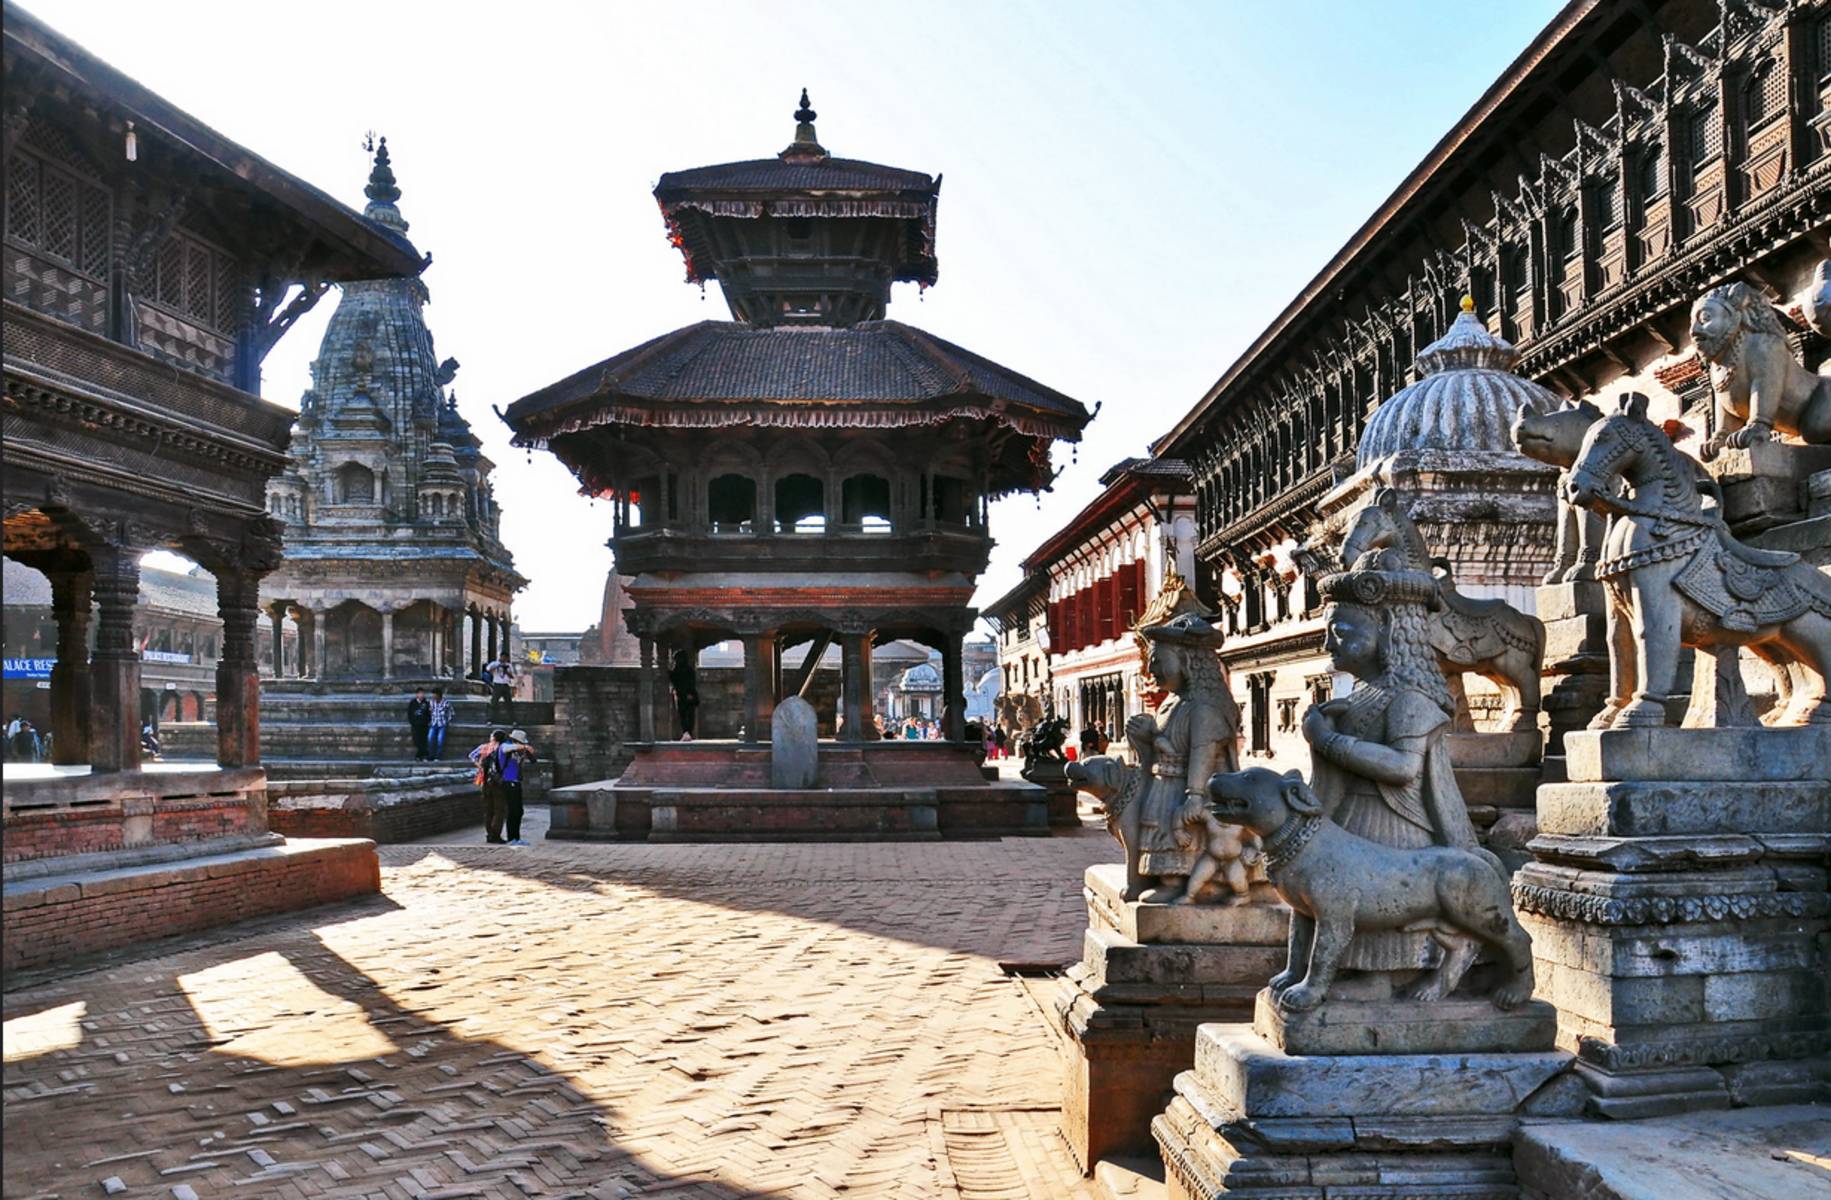 Visita a Katmandú: Patan, Swayambhunath, Boudhanath